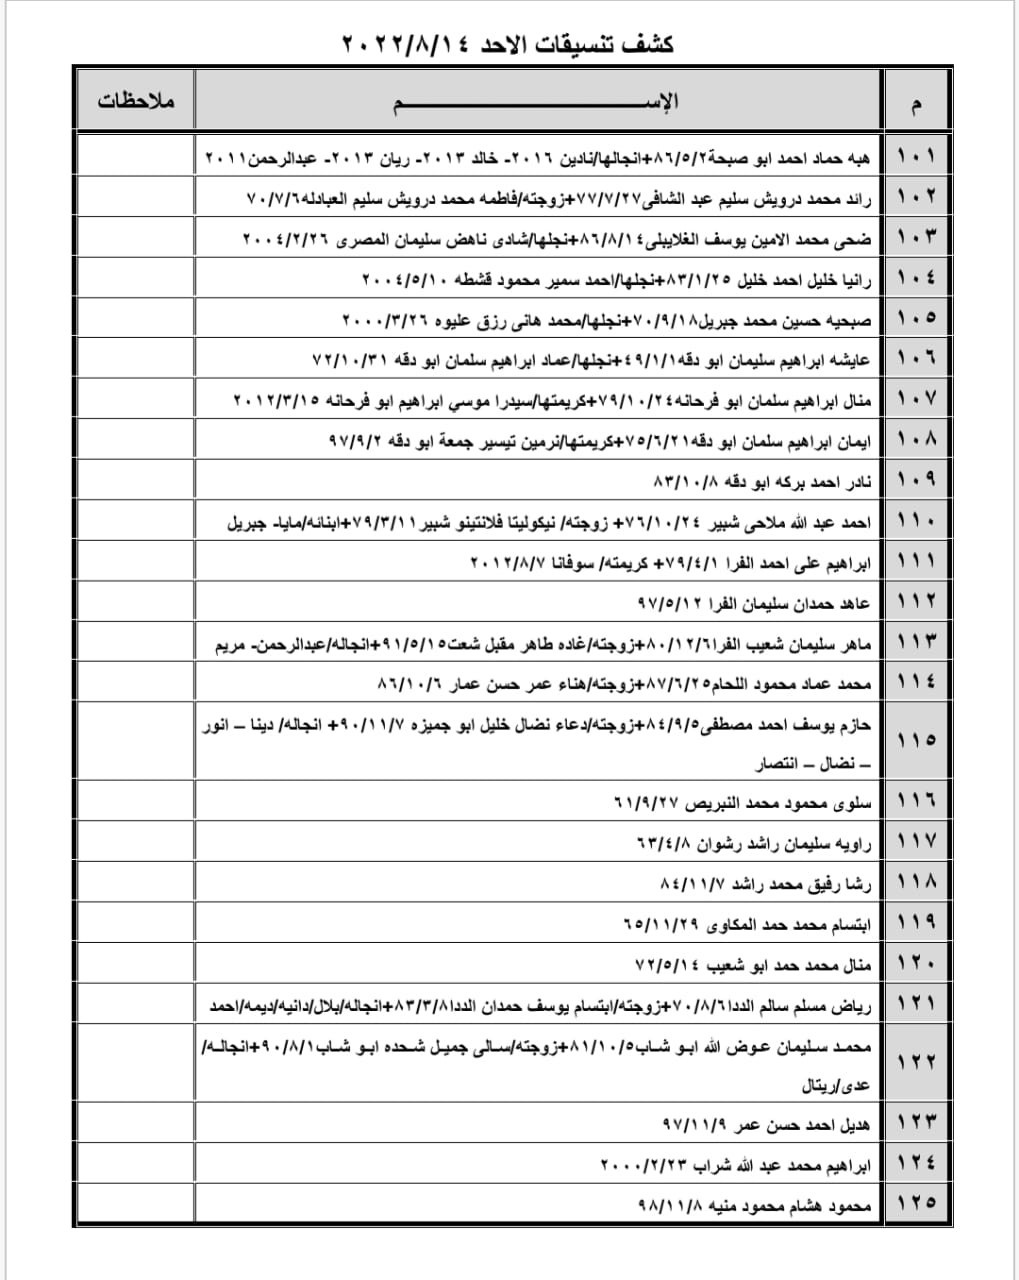 بالأسماء: كشف "تنسيقات مصرية" للسفر عبر معبر رفح الأحد 14 أغسطس 2022